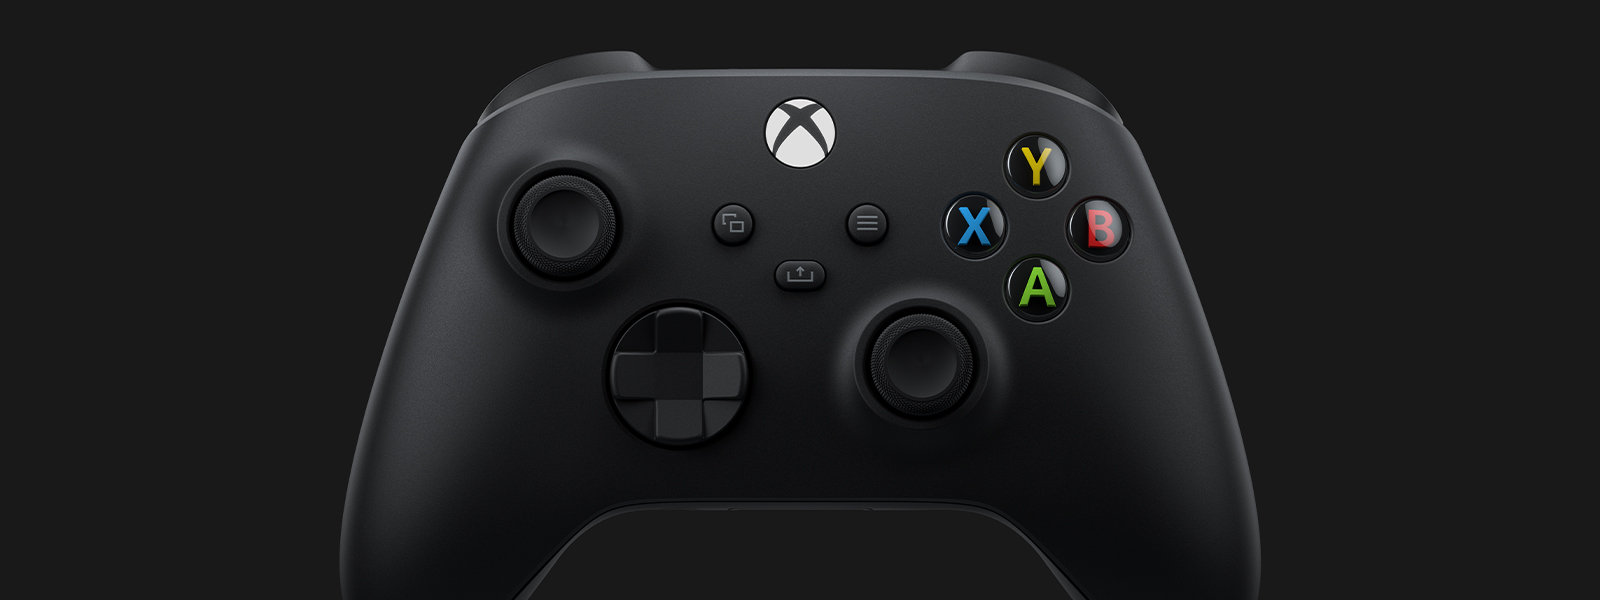 Vista frontal en ángulo del Mando inalámbrico Xbox – Carbon Black